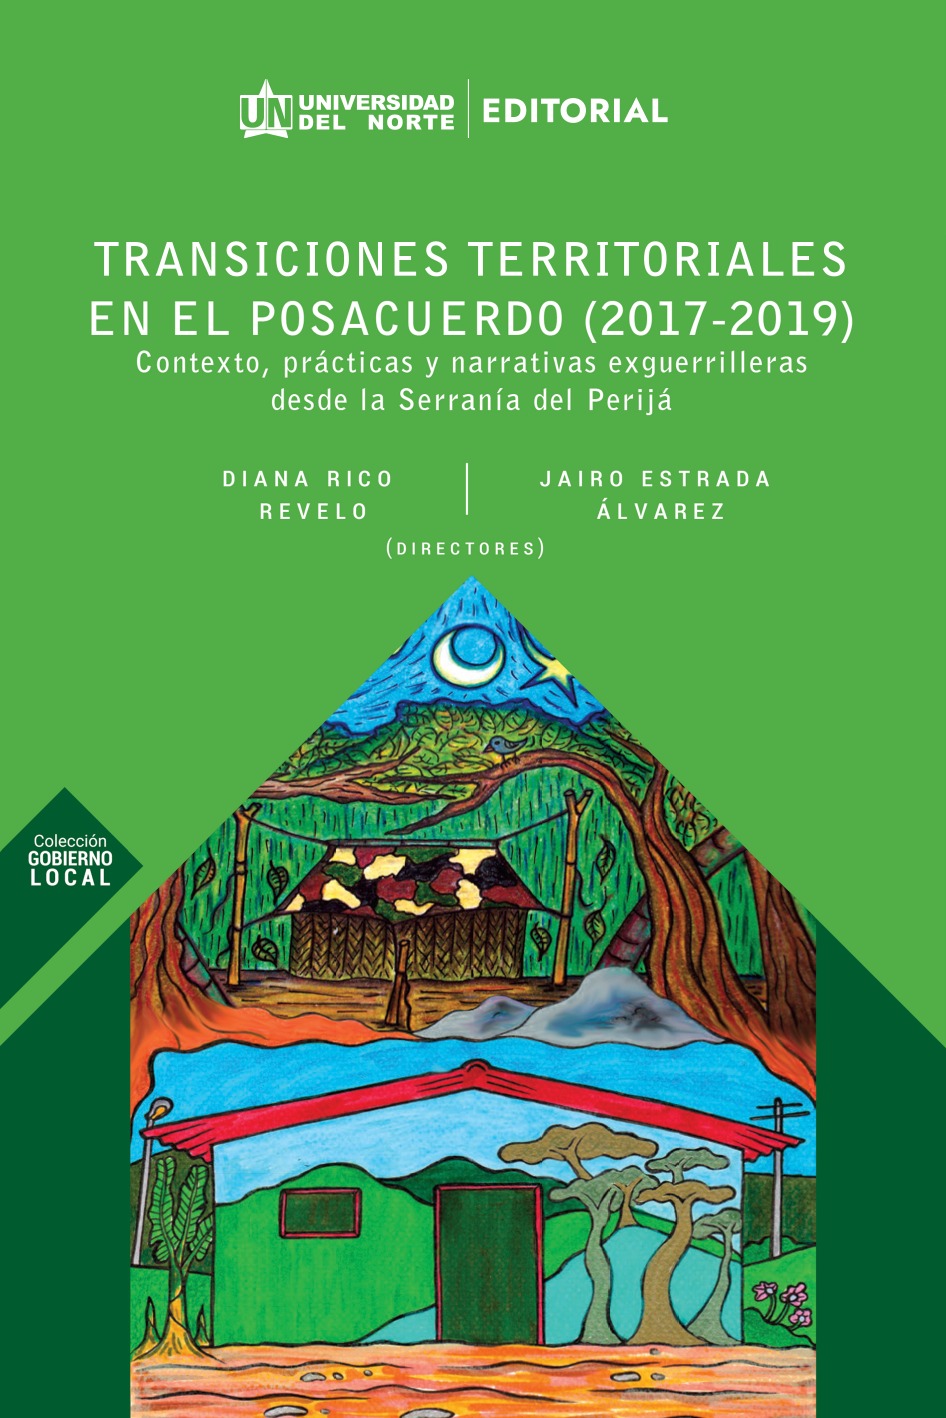 Transiciones territoriales en el posacuerdo (2017-2019)
Contexto, Prácticas y narrativas exguerrilleras desde la serranía del Perijá